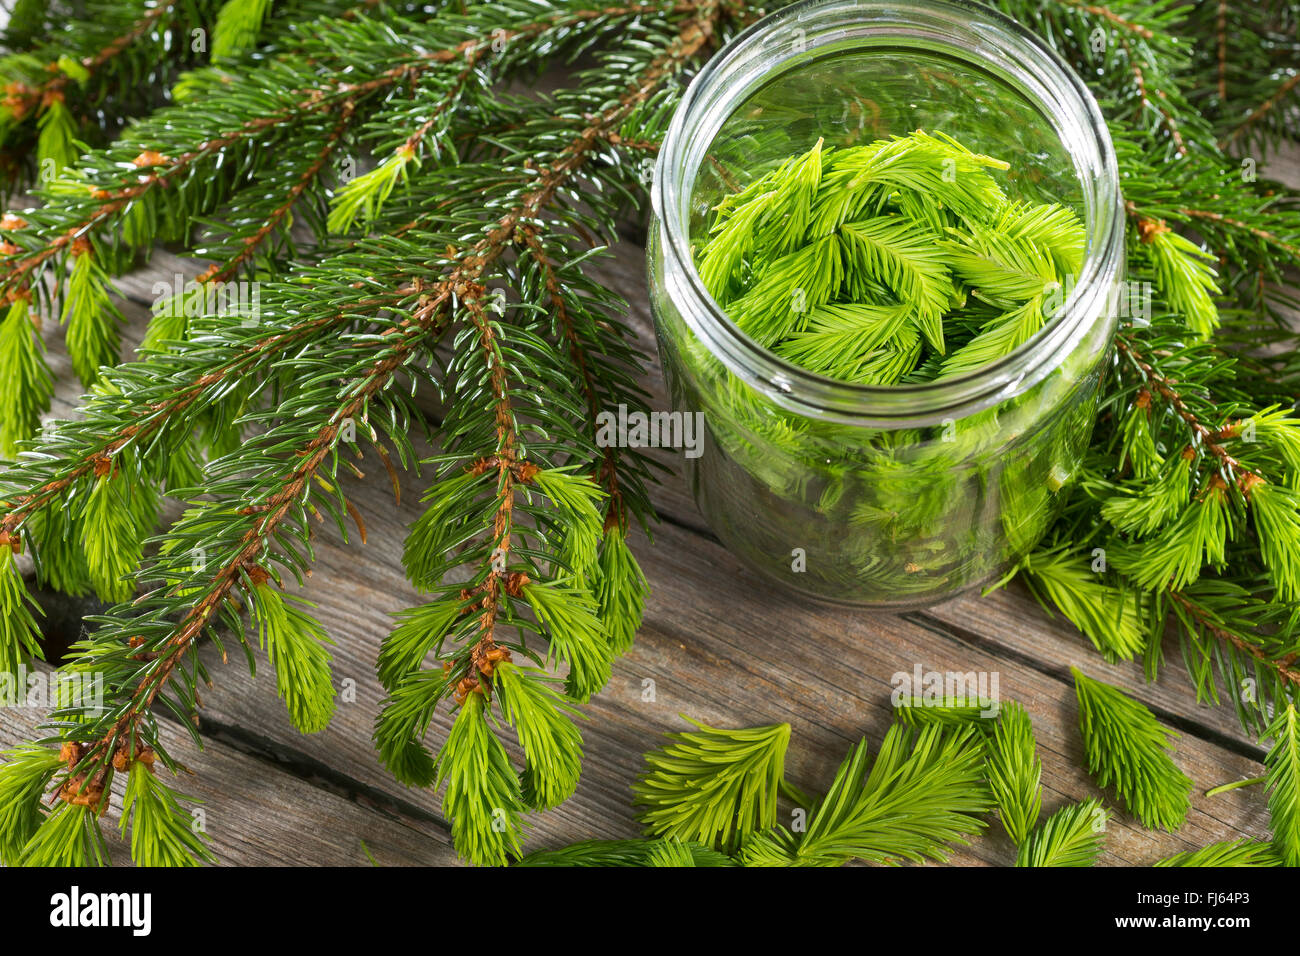 Norwegen Fichte (Picea Abies), junge Sproots in einem konservierenden Glas, Deutschland Stockfoto